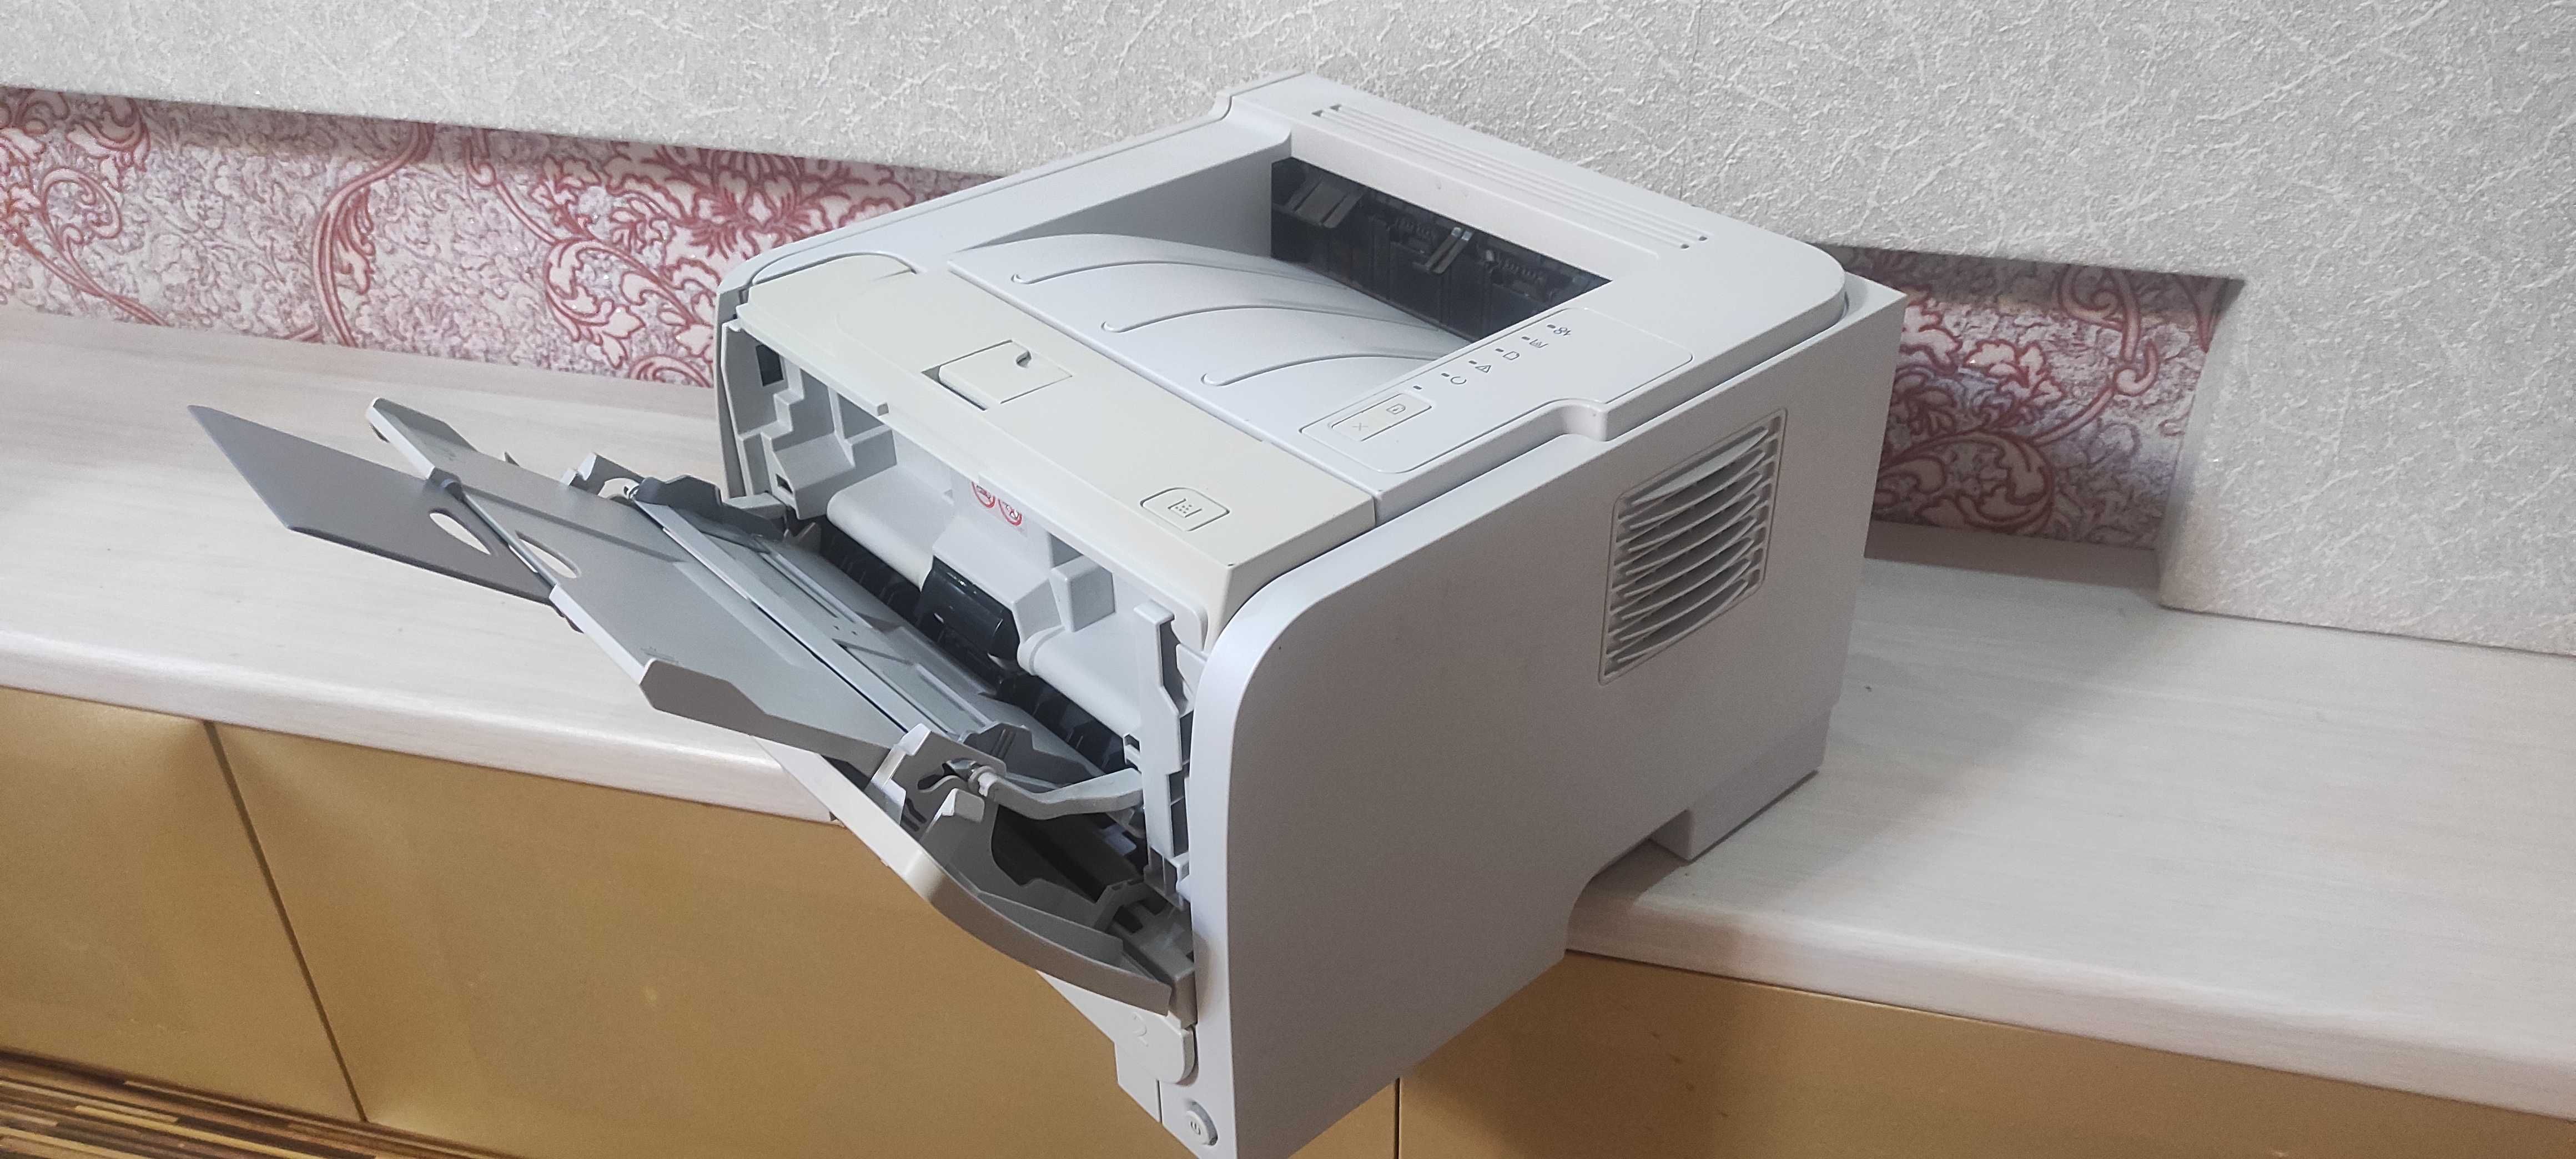 Принтер Laser Jet P2035 доставка и установка